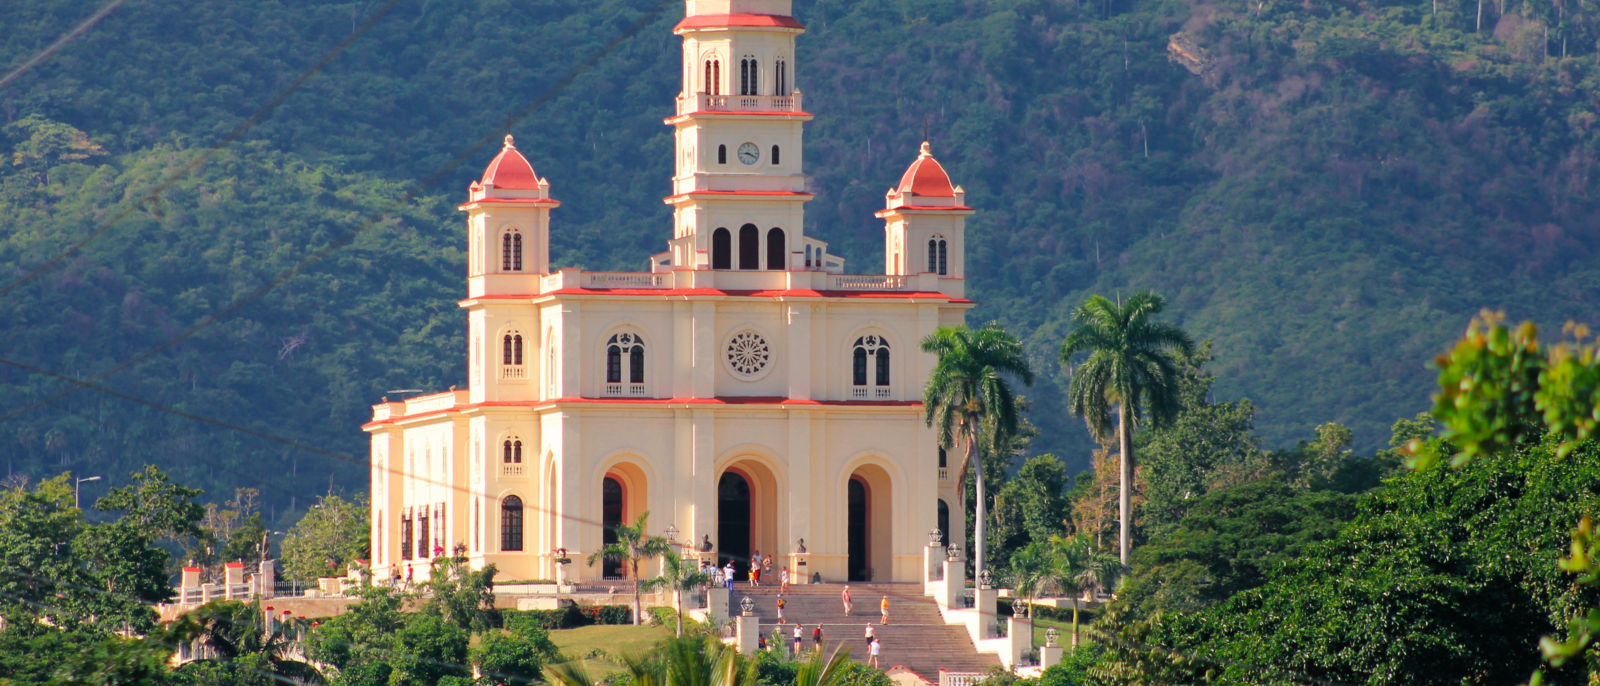 Basilica del Cobre, near Santiago de Cuba, Cuba